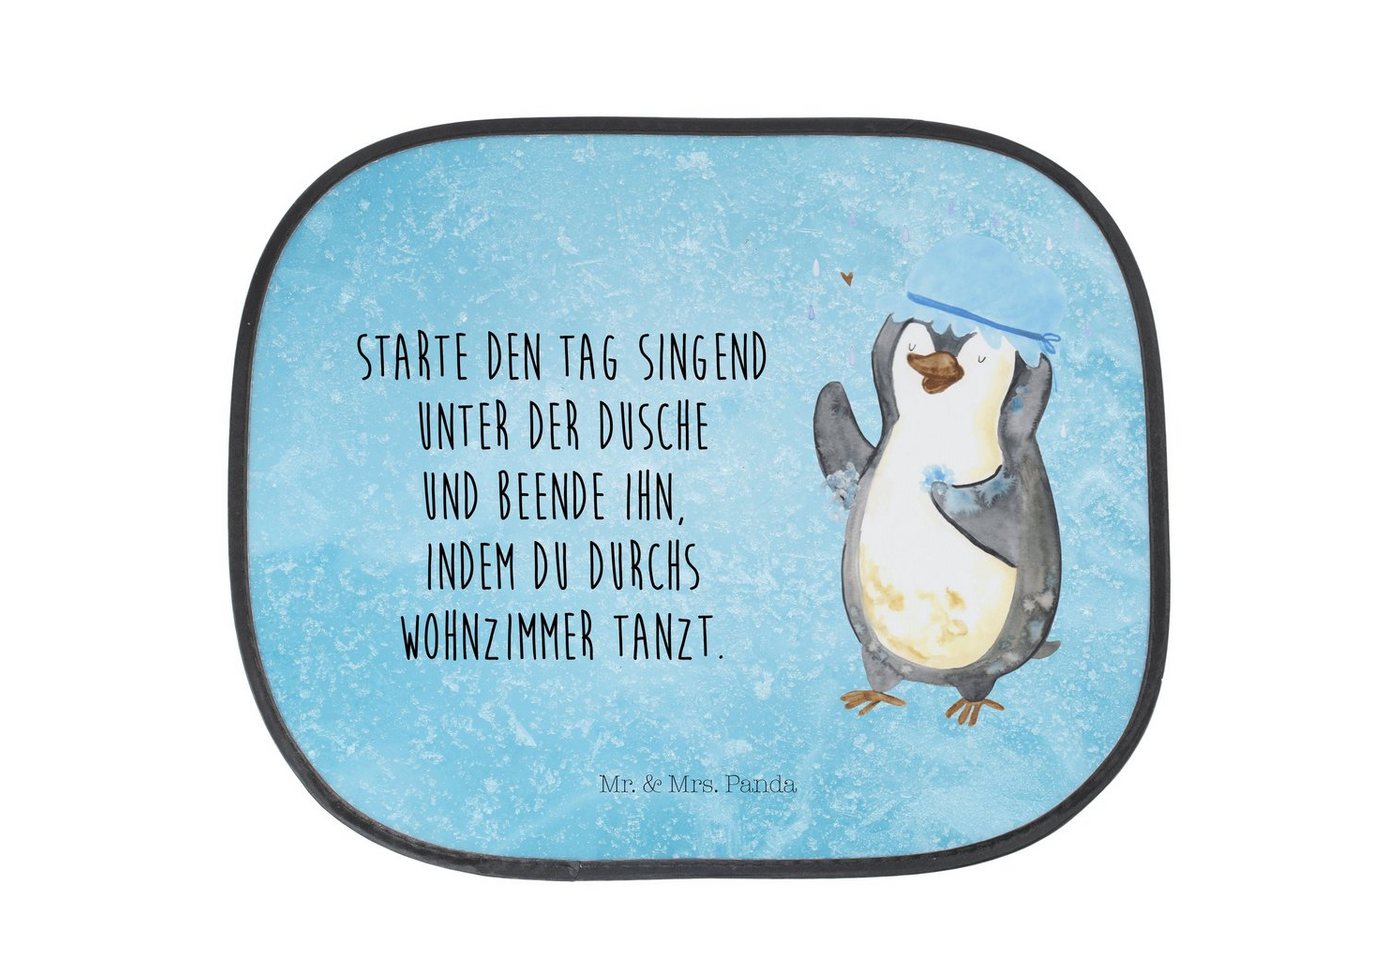 Sonnenschutz Pinguin Duschen - Eisblau - Geschenk, baden, Sonne, Sonnenschutz Kind, Mr. & Mrs. Panda, Seidenmatt, Einzigartige Motive von Mr. & Mrs. Panda